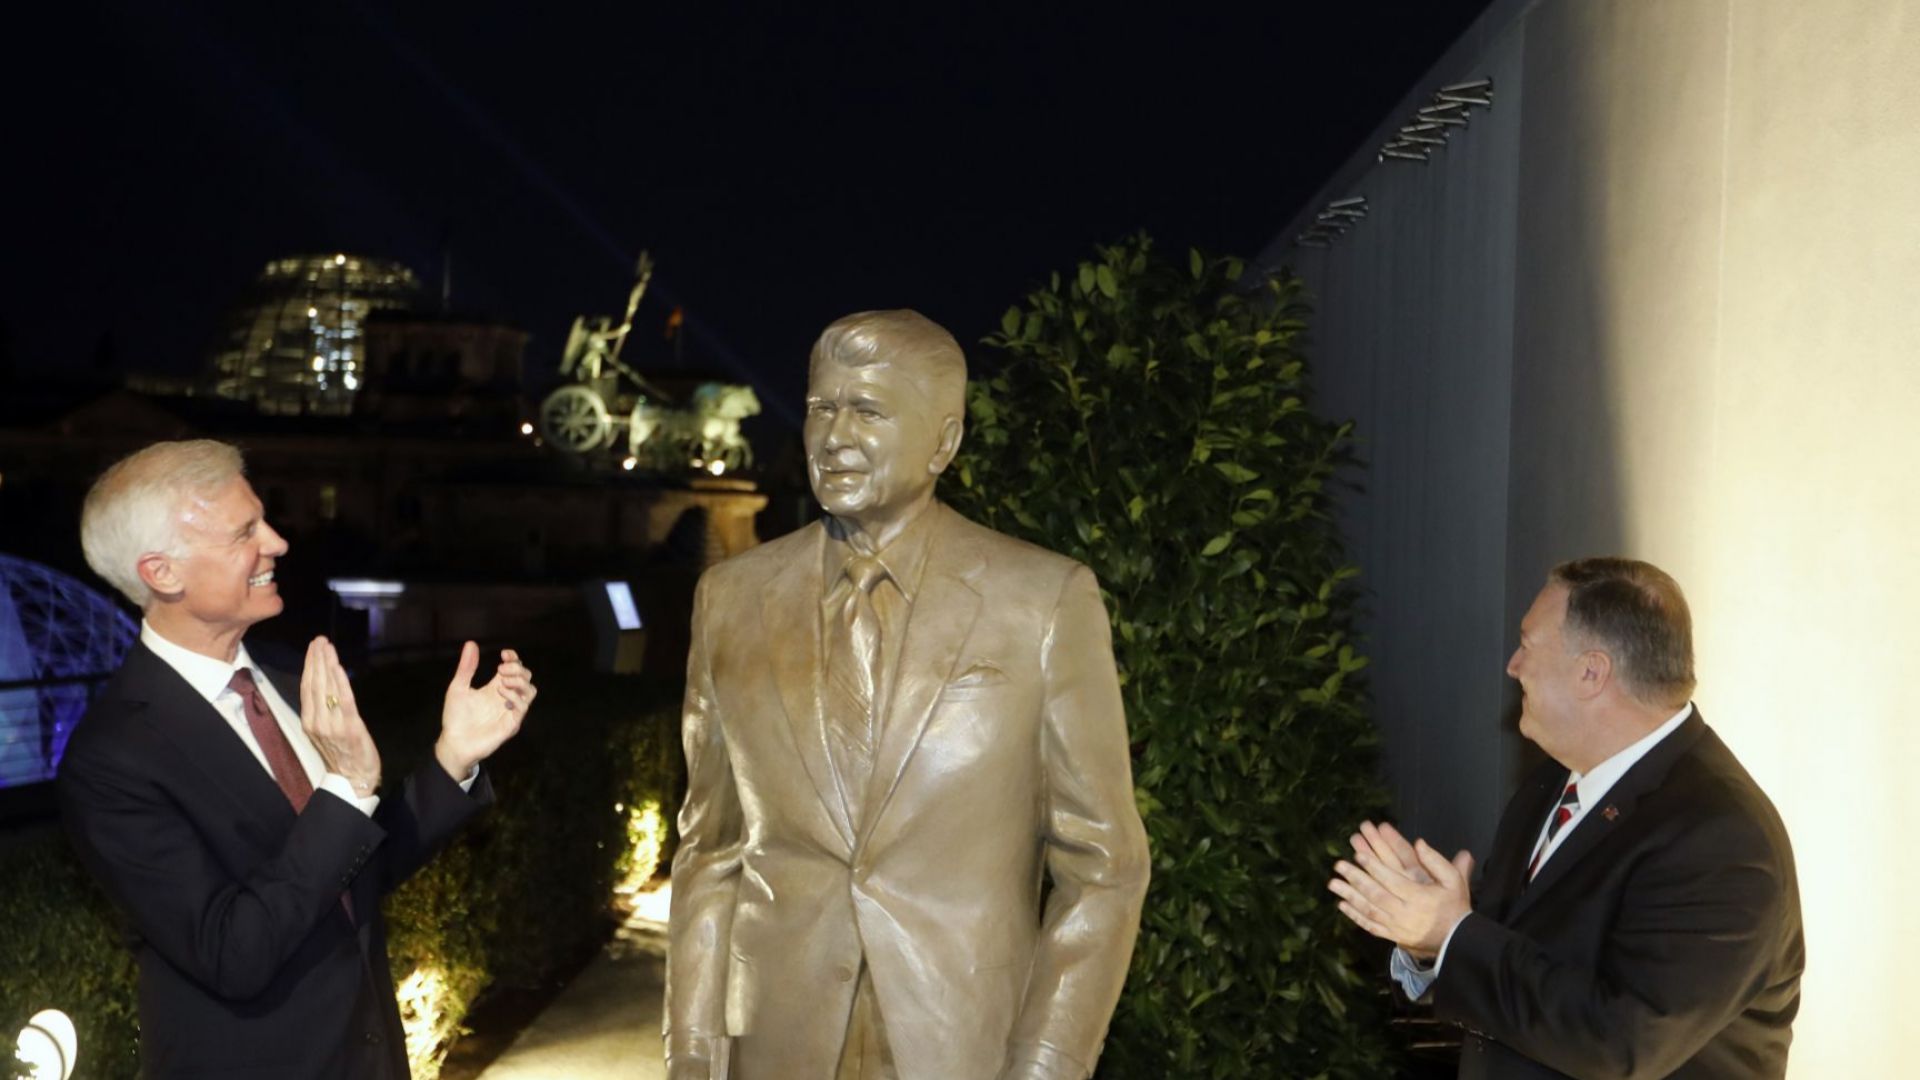 Статуя на Роналд Рейгън бе открита днес в посолството на